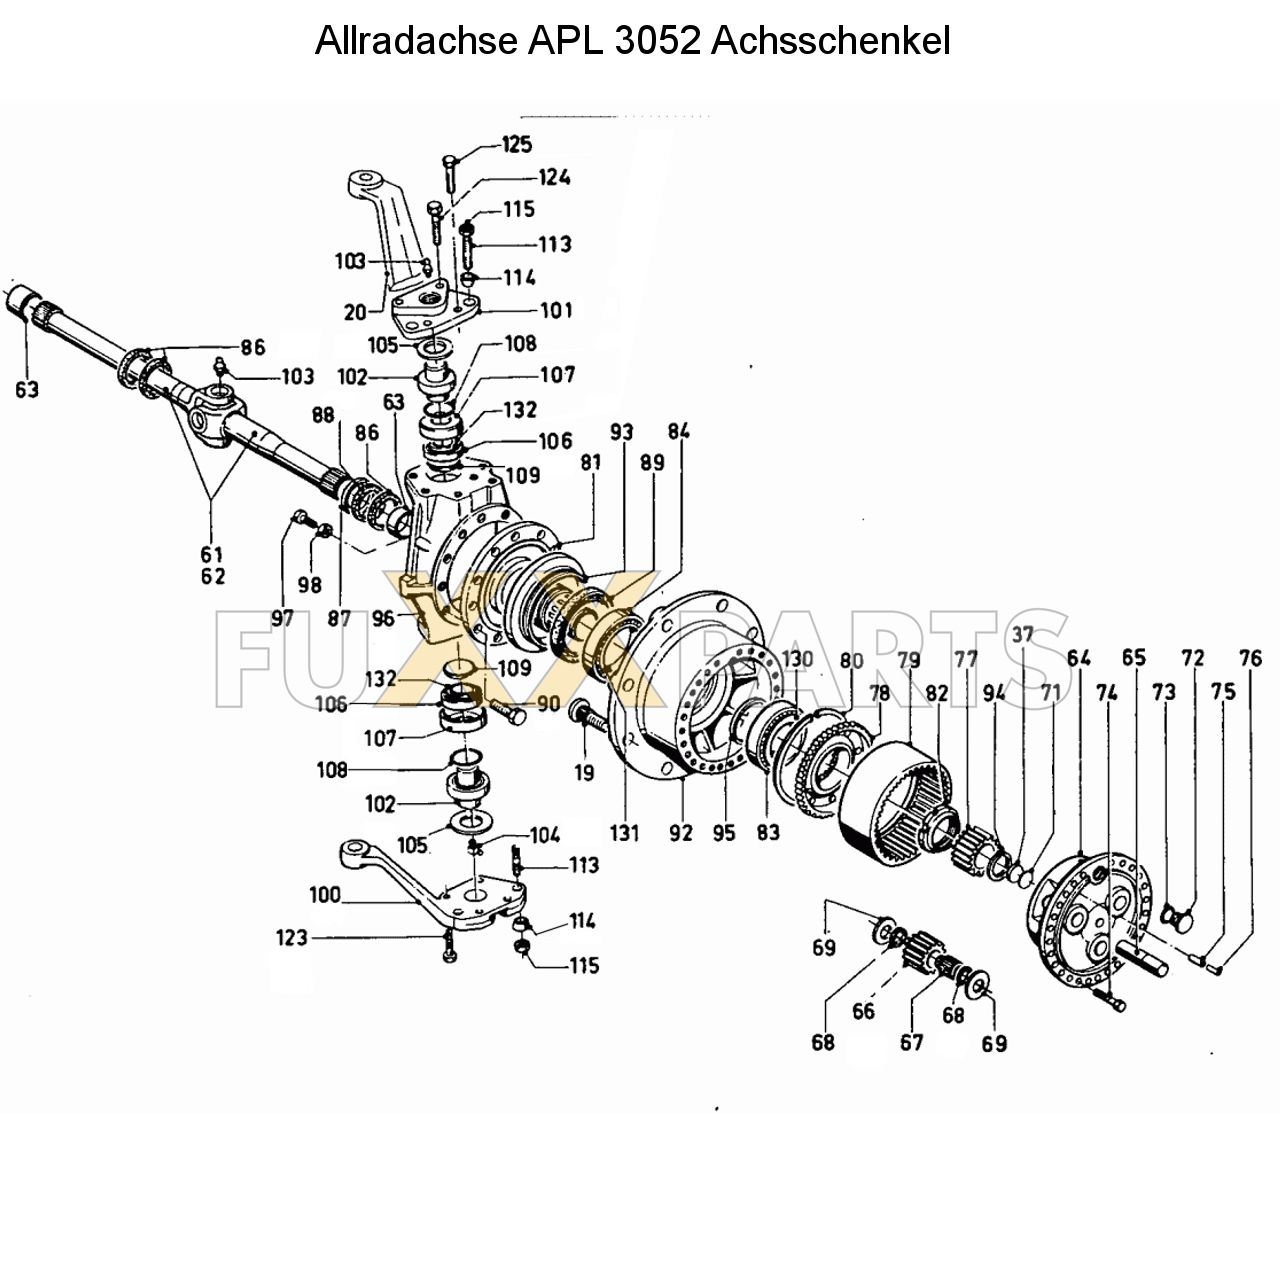 D 8006 Allradachse APL 3052 Achsschenkel